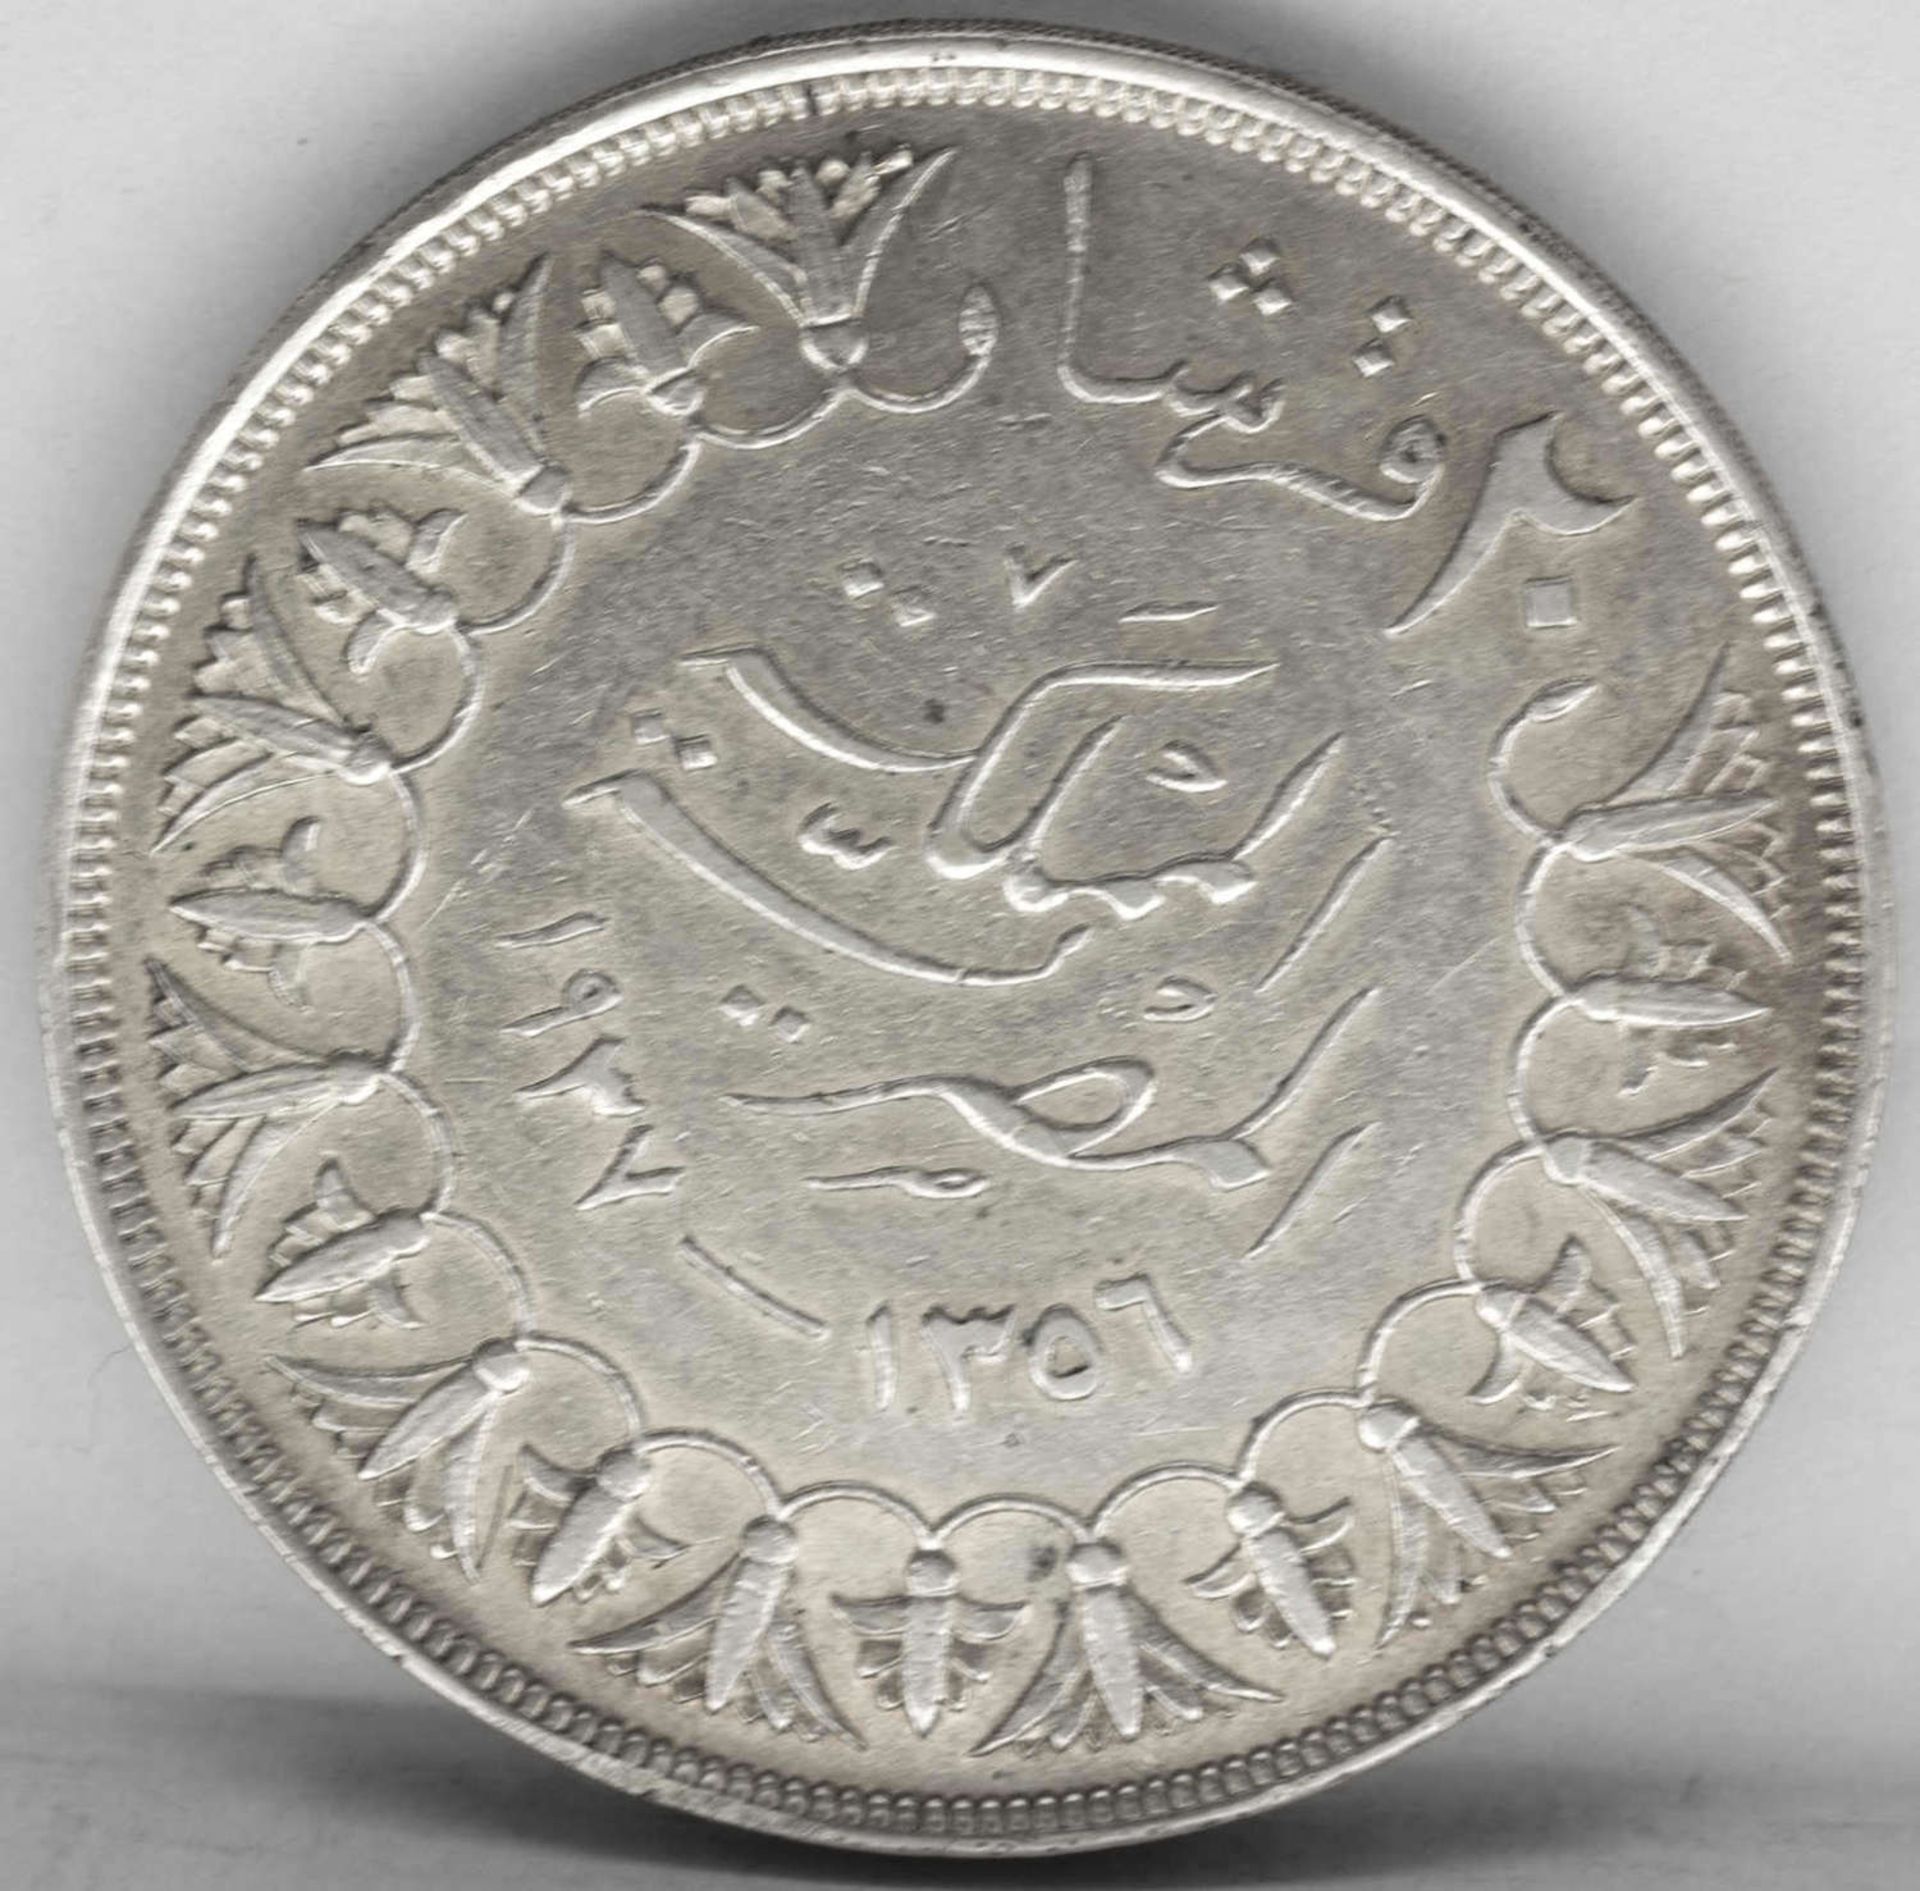 Ägypten 1937, 20 Piaster - Silbermünze "Farouk". Gewicht: ca. 28 g. Erhaltung: ss. - Bild 2 aus 2